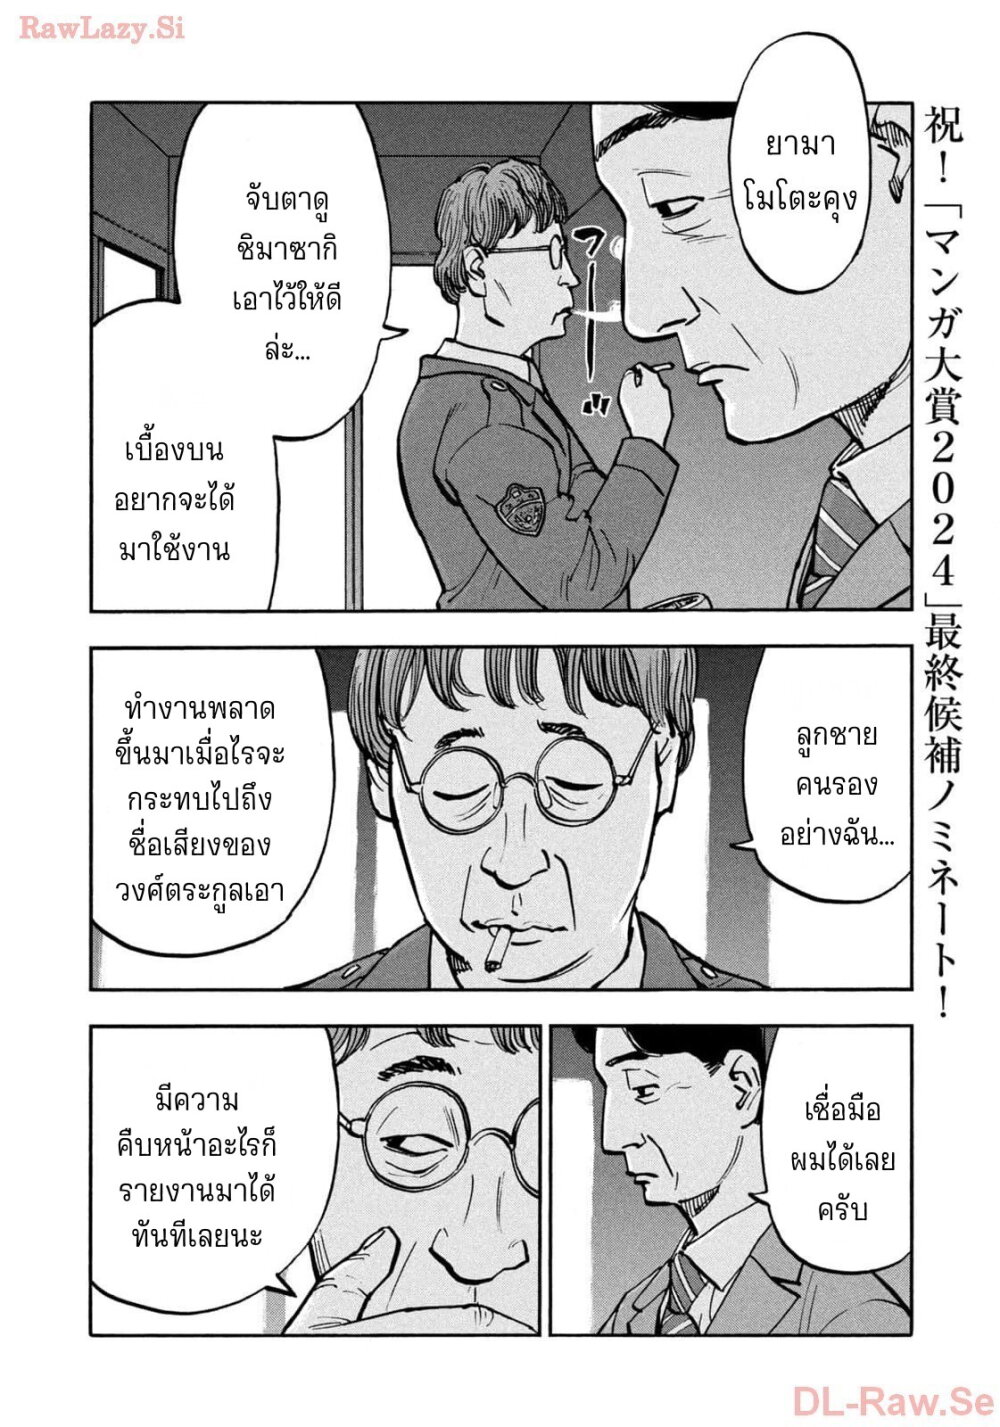 อ่านมังงะ Heiwa no Kuni no Shimazaki e ตอนที่ 61/9.jpg